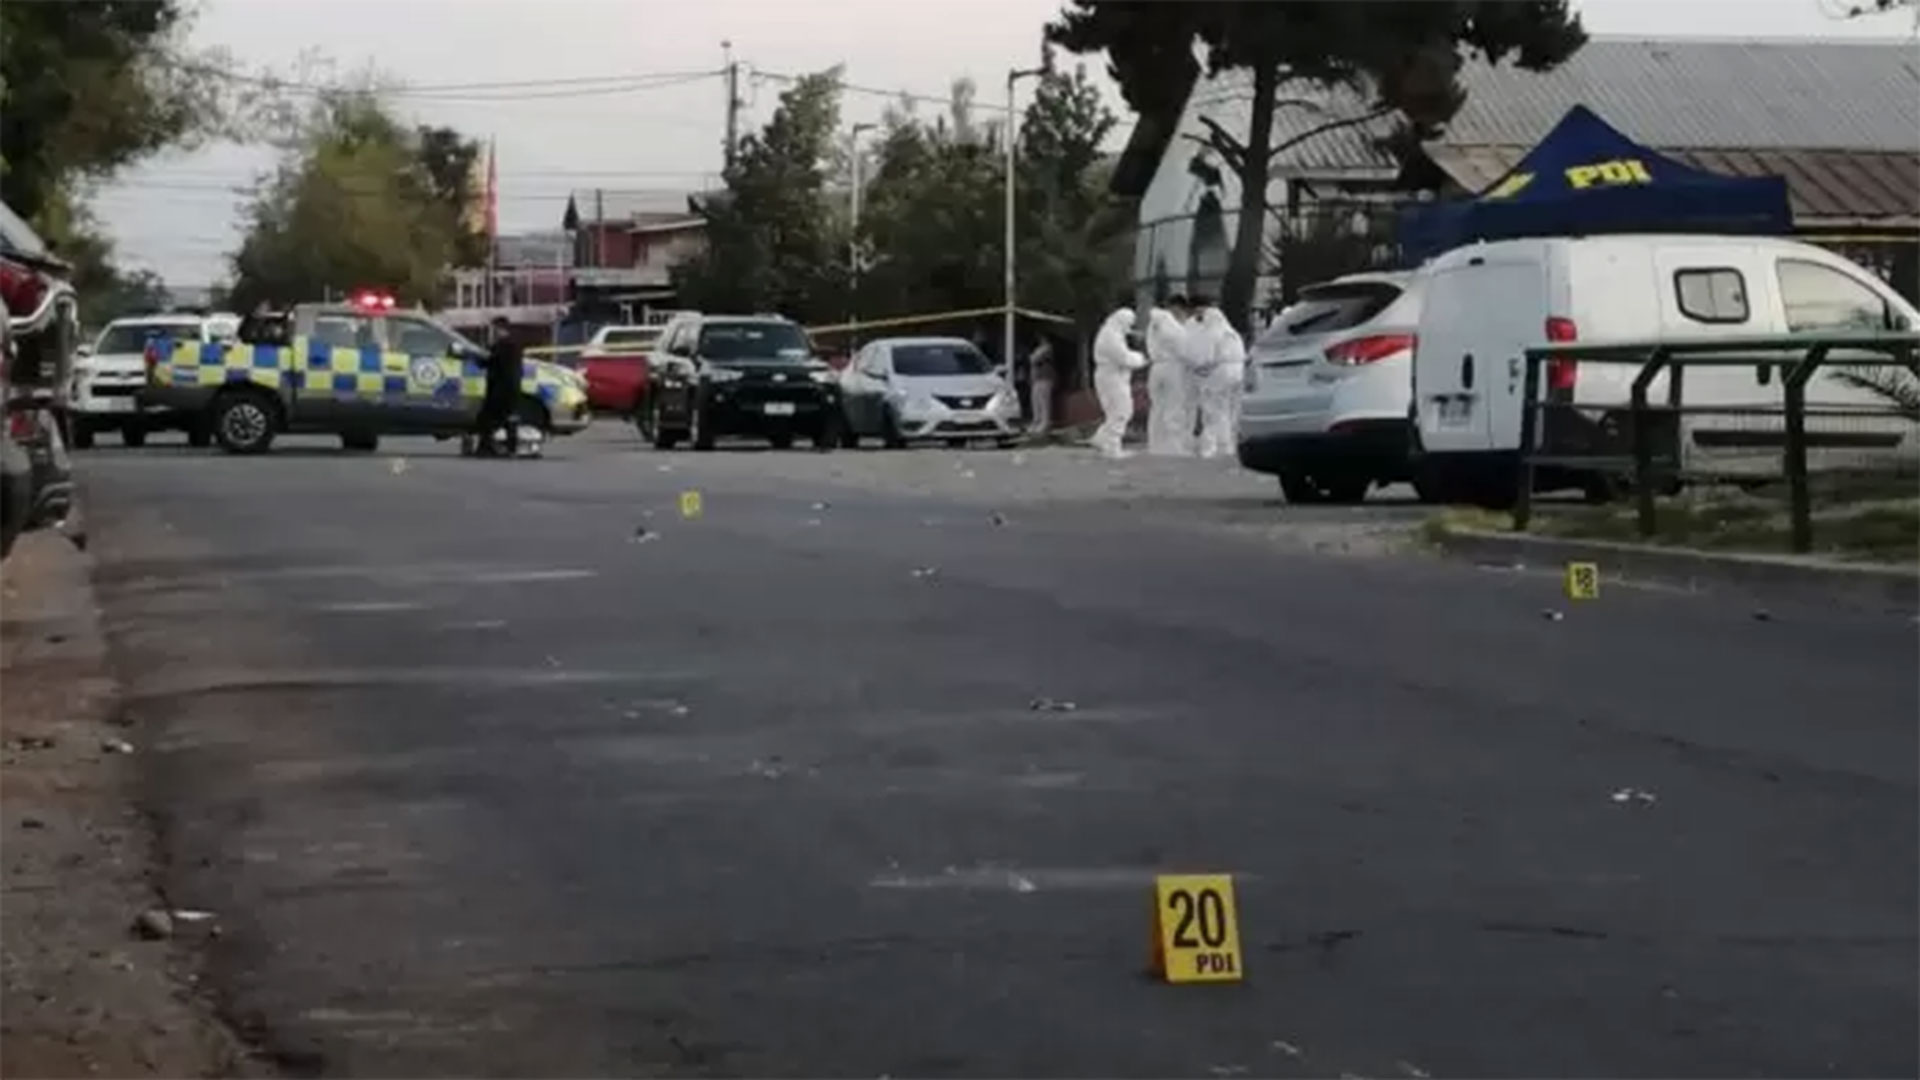 Balaceras y tiroteos son cada vez más frecuentes en Chile: dos muertes en una noche genera alarma en la ciudadanía